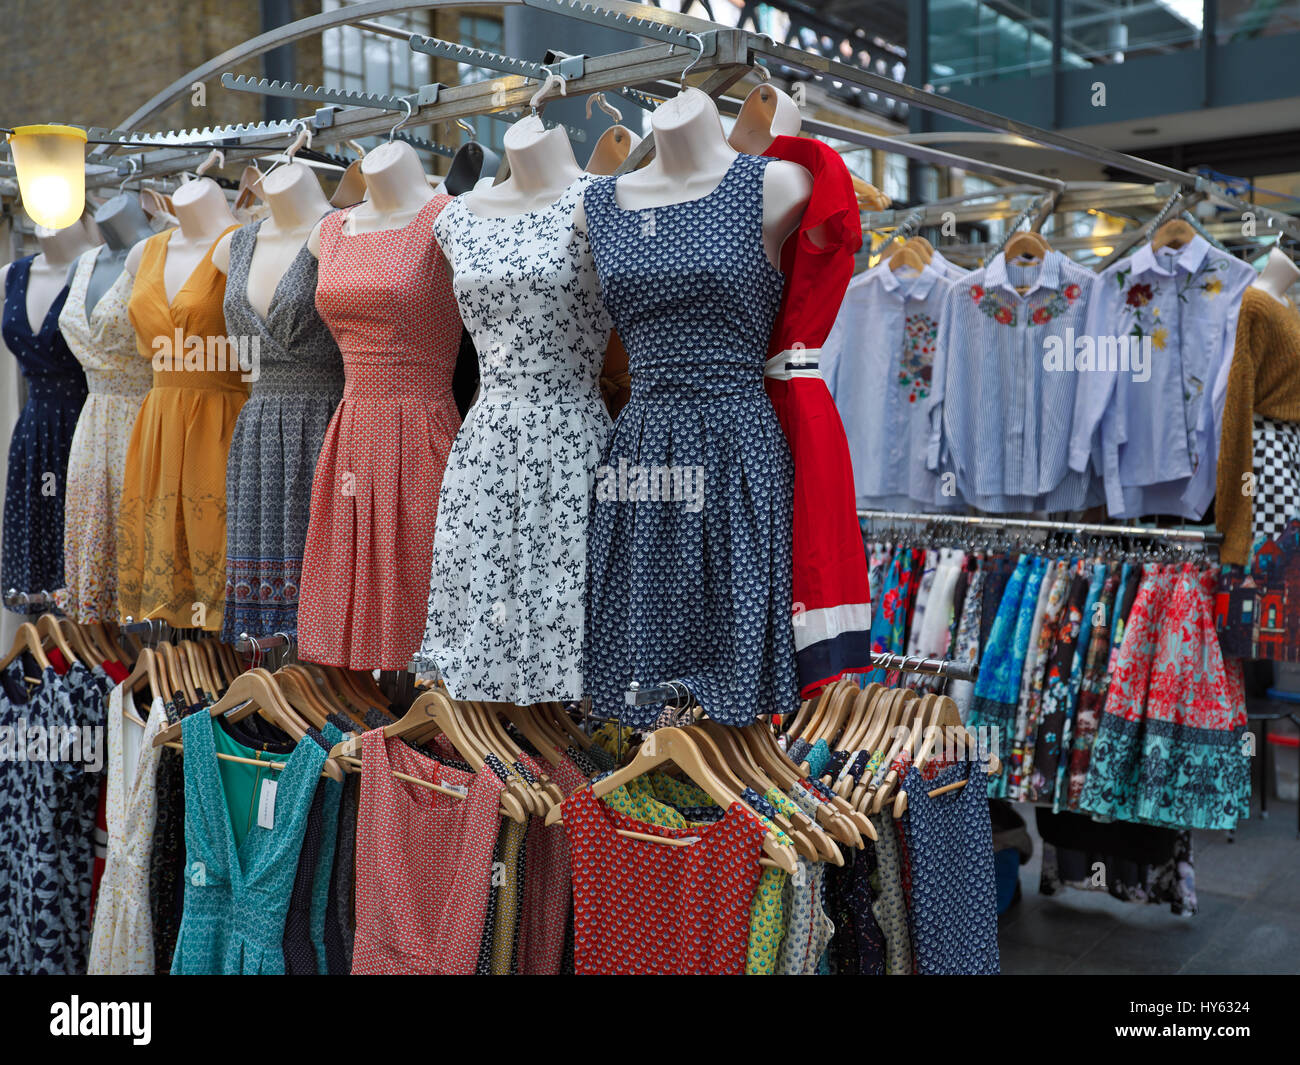 La pendaison pour robes vente au marché de Spitalfields Banque D'Images